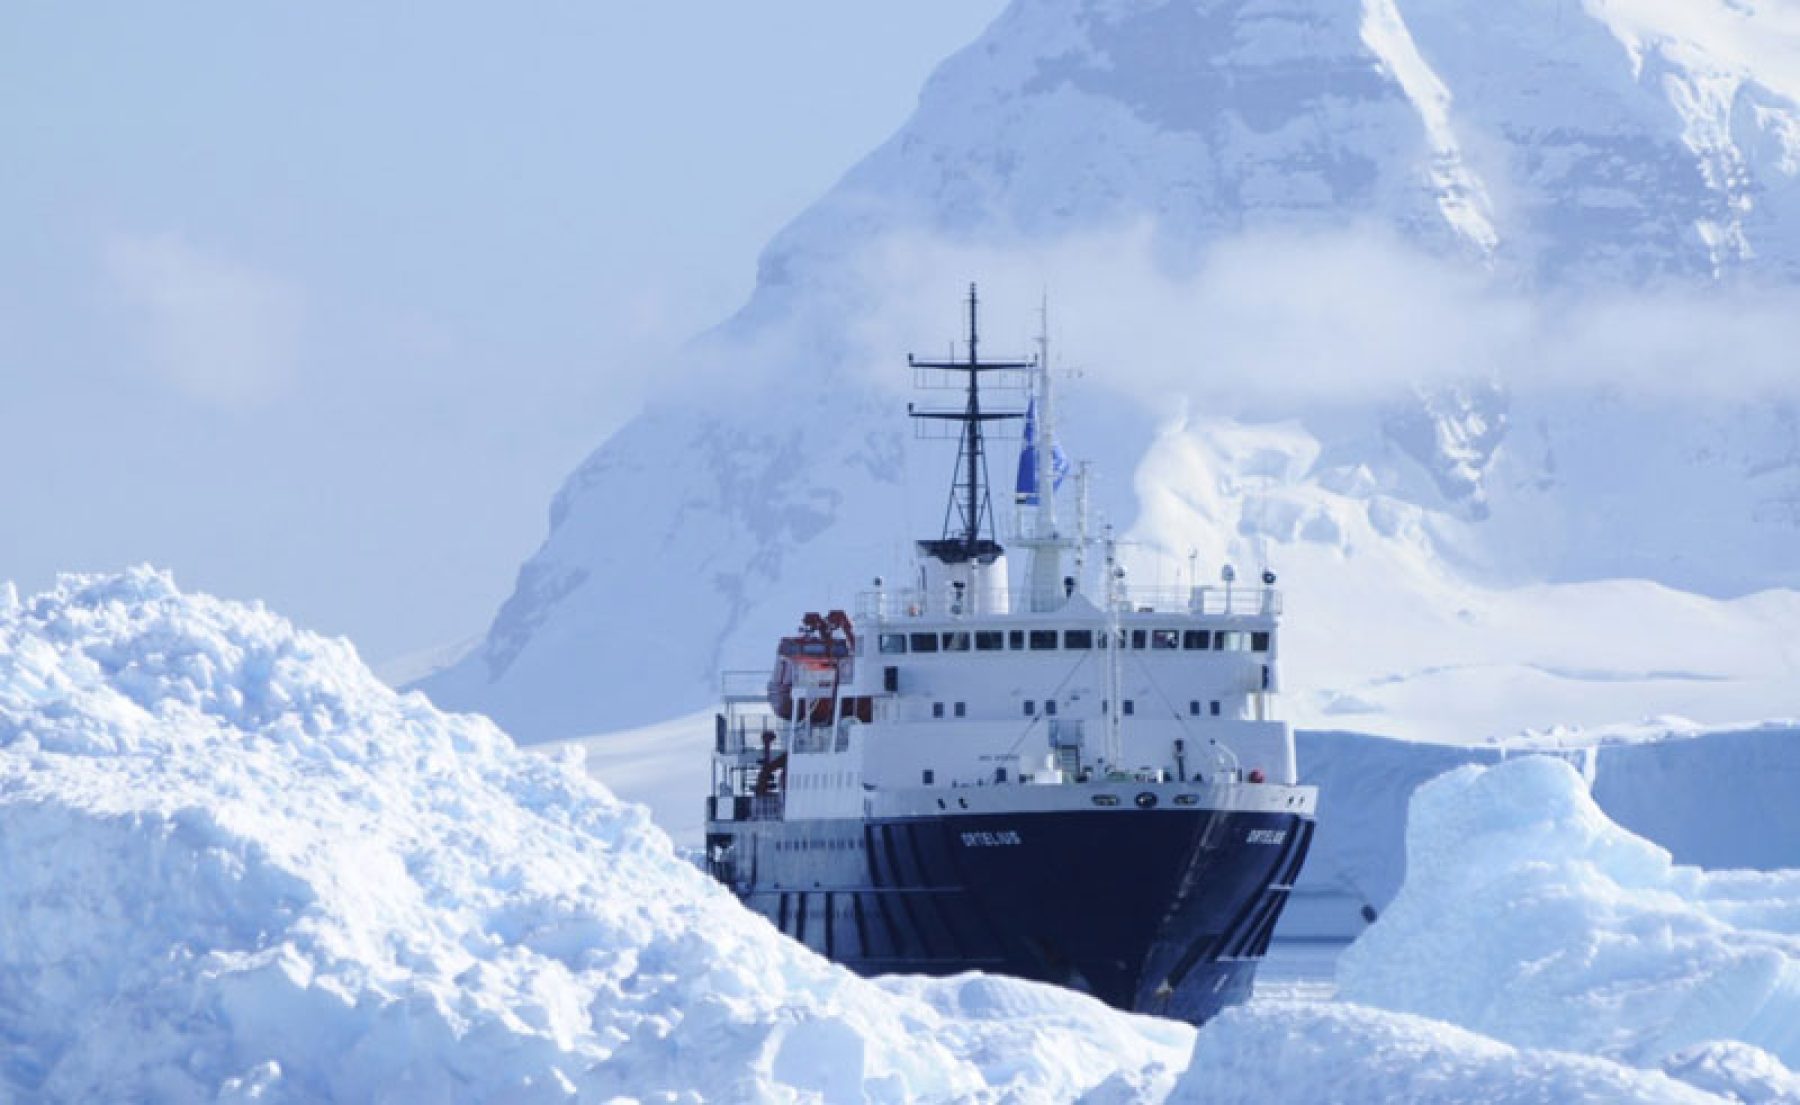 antarctica ortelius ship sailing through icy waters